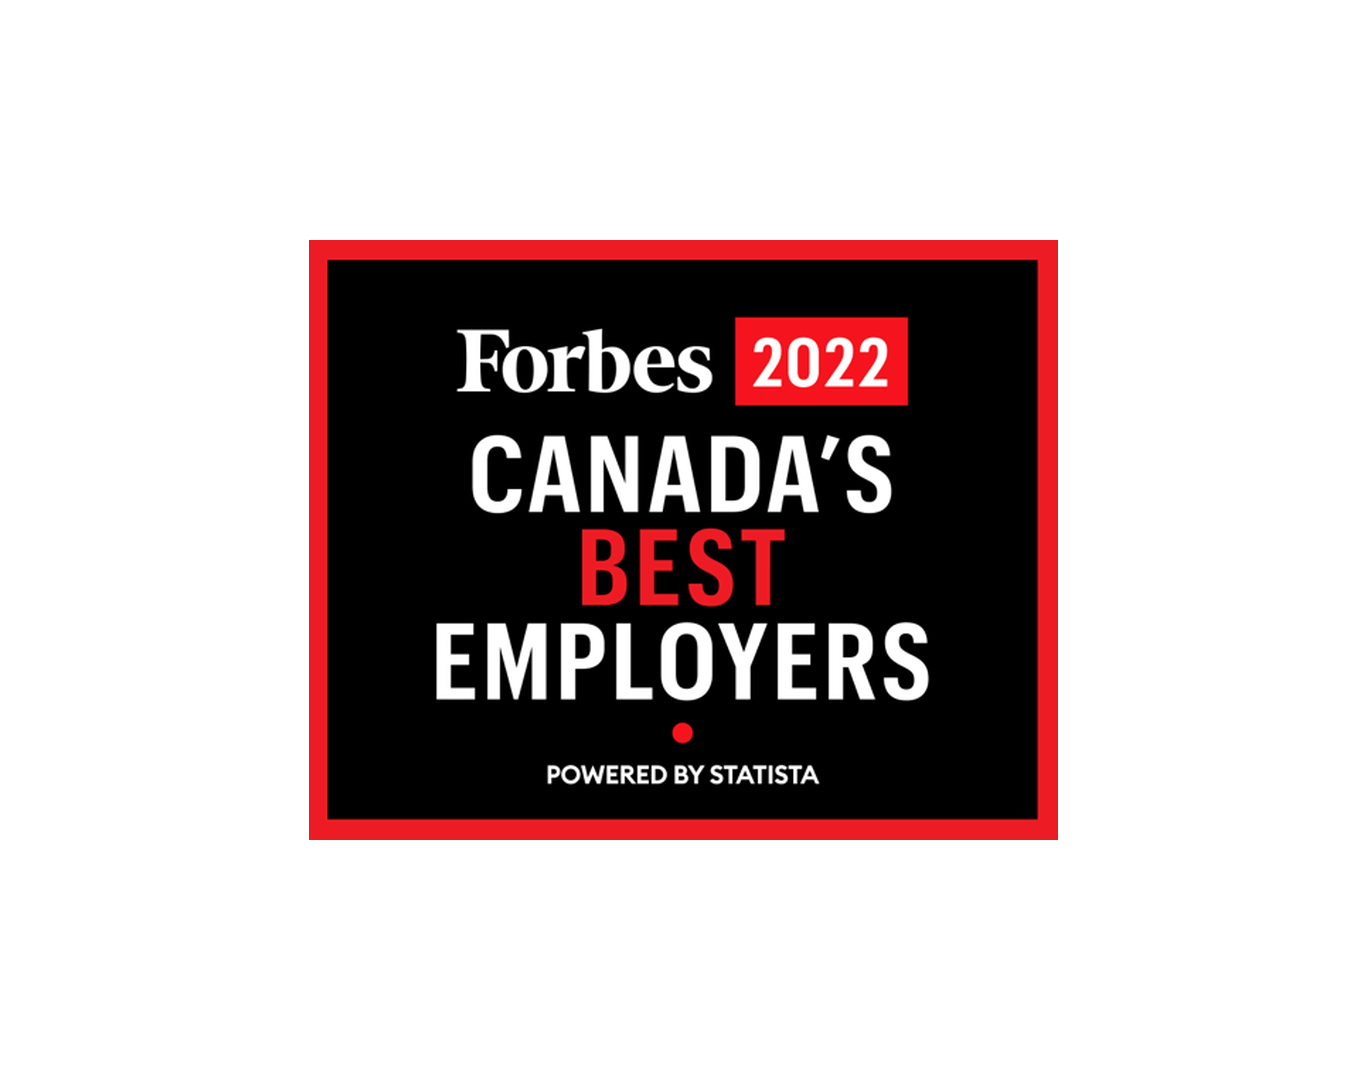 Les meilleurs employeurs du Canada – Forbes 2022